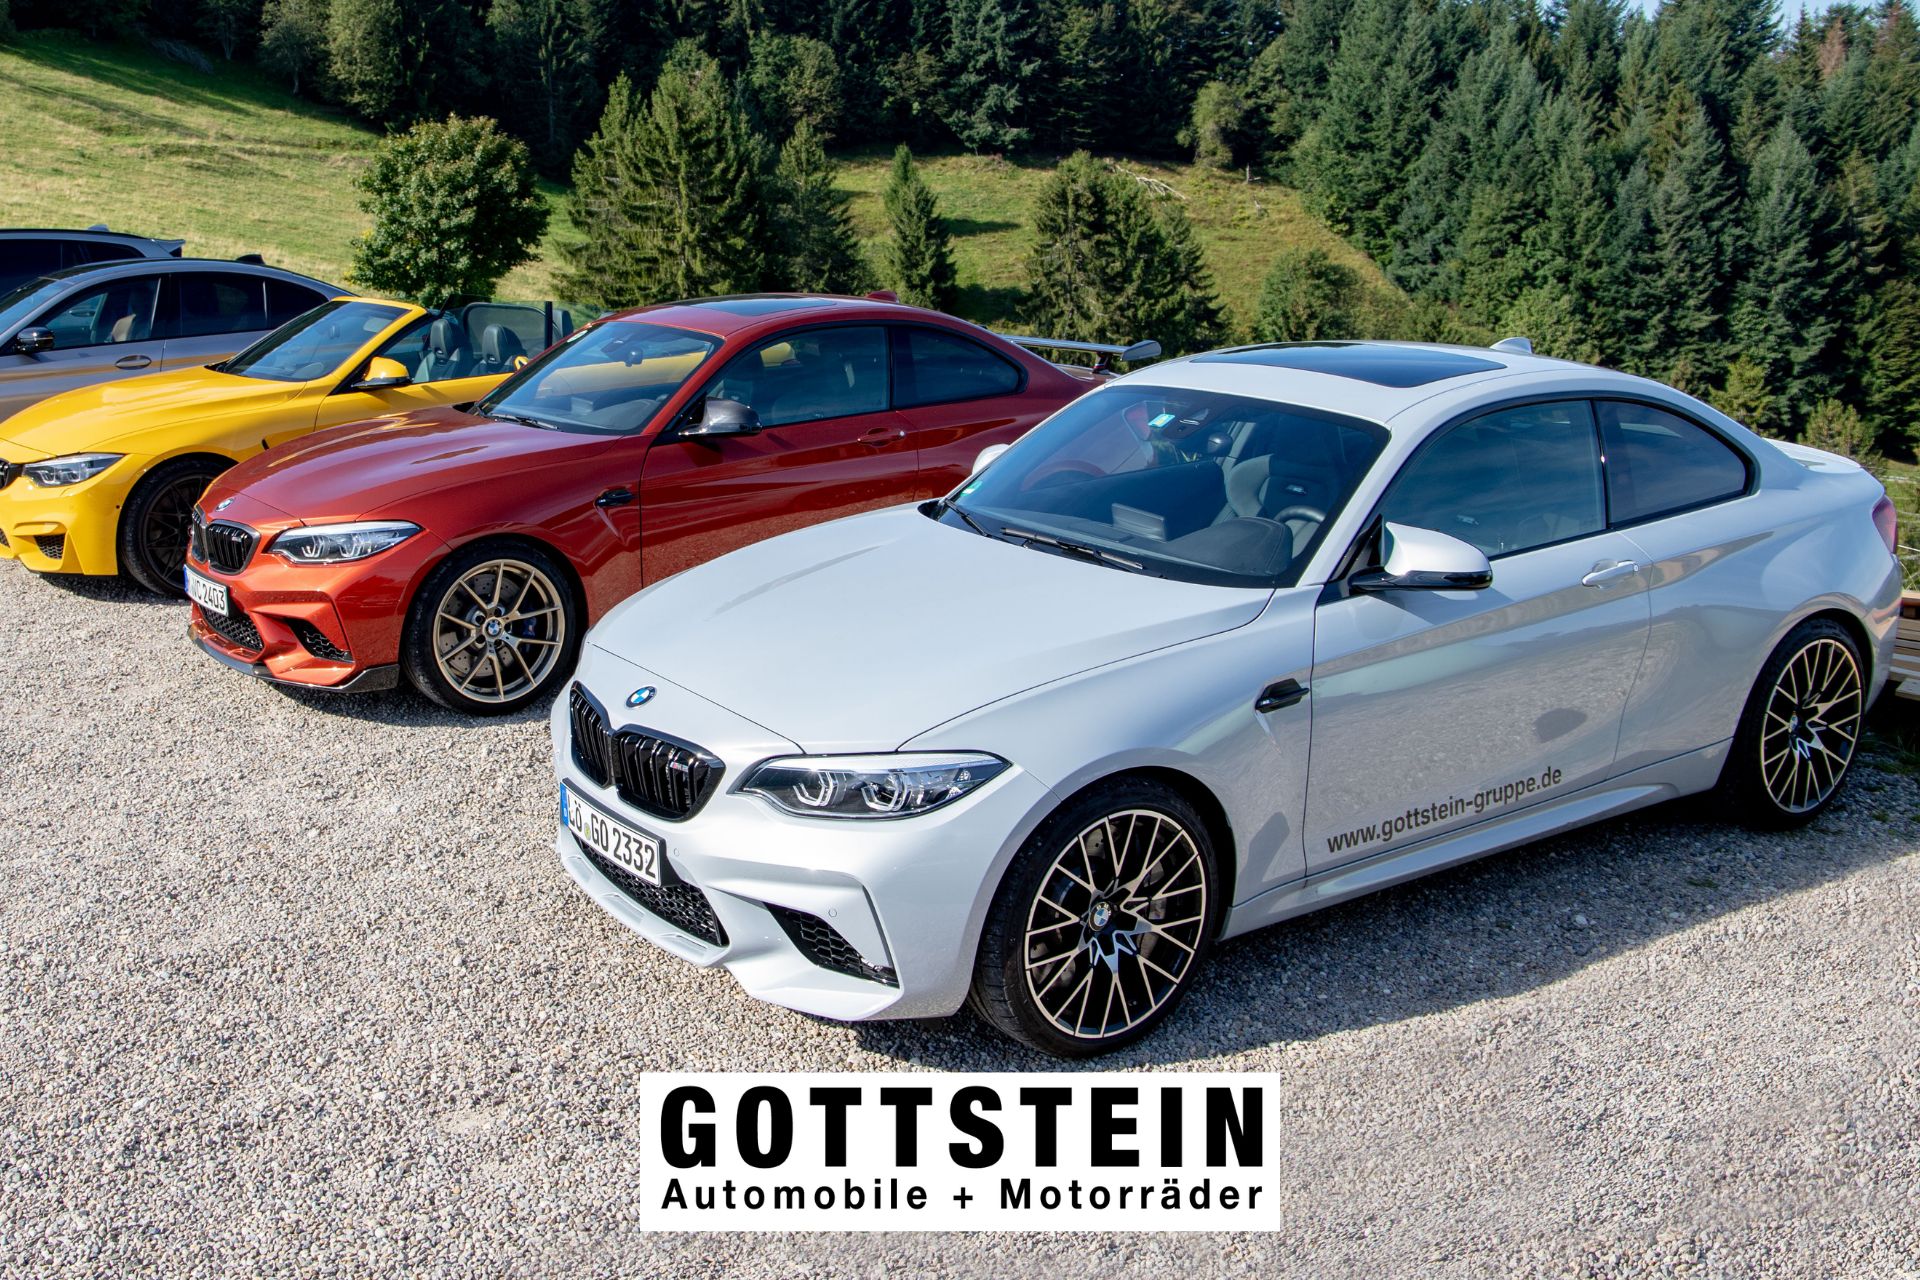 Gottstein Automobile und Motorräder | Produktfotografie | Eventfotgrafie